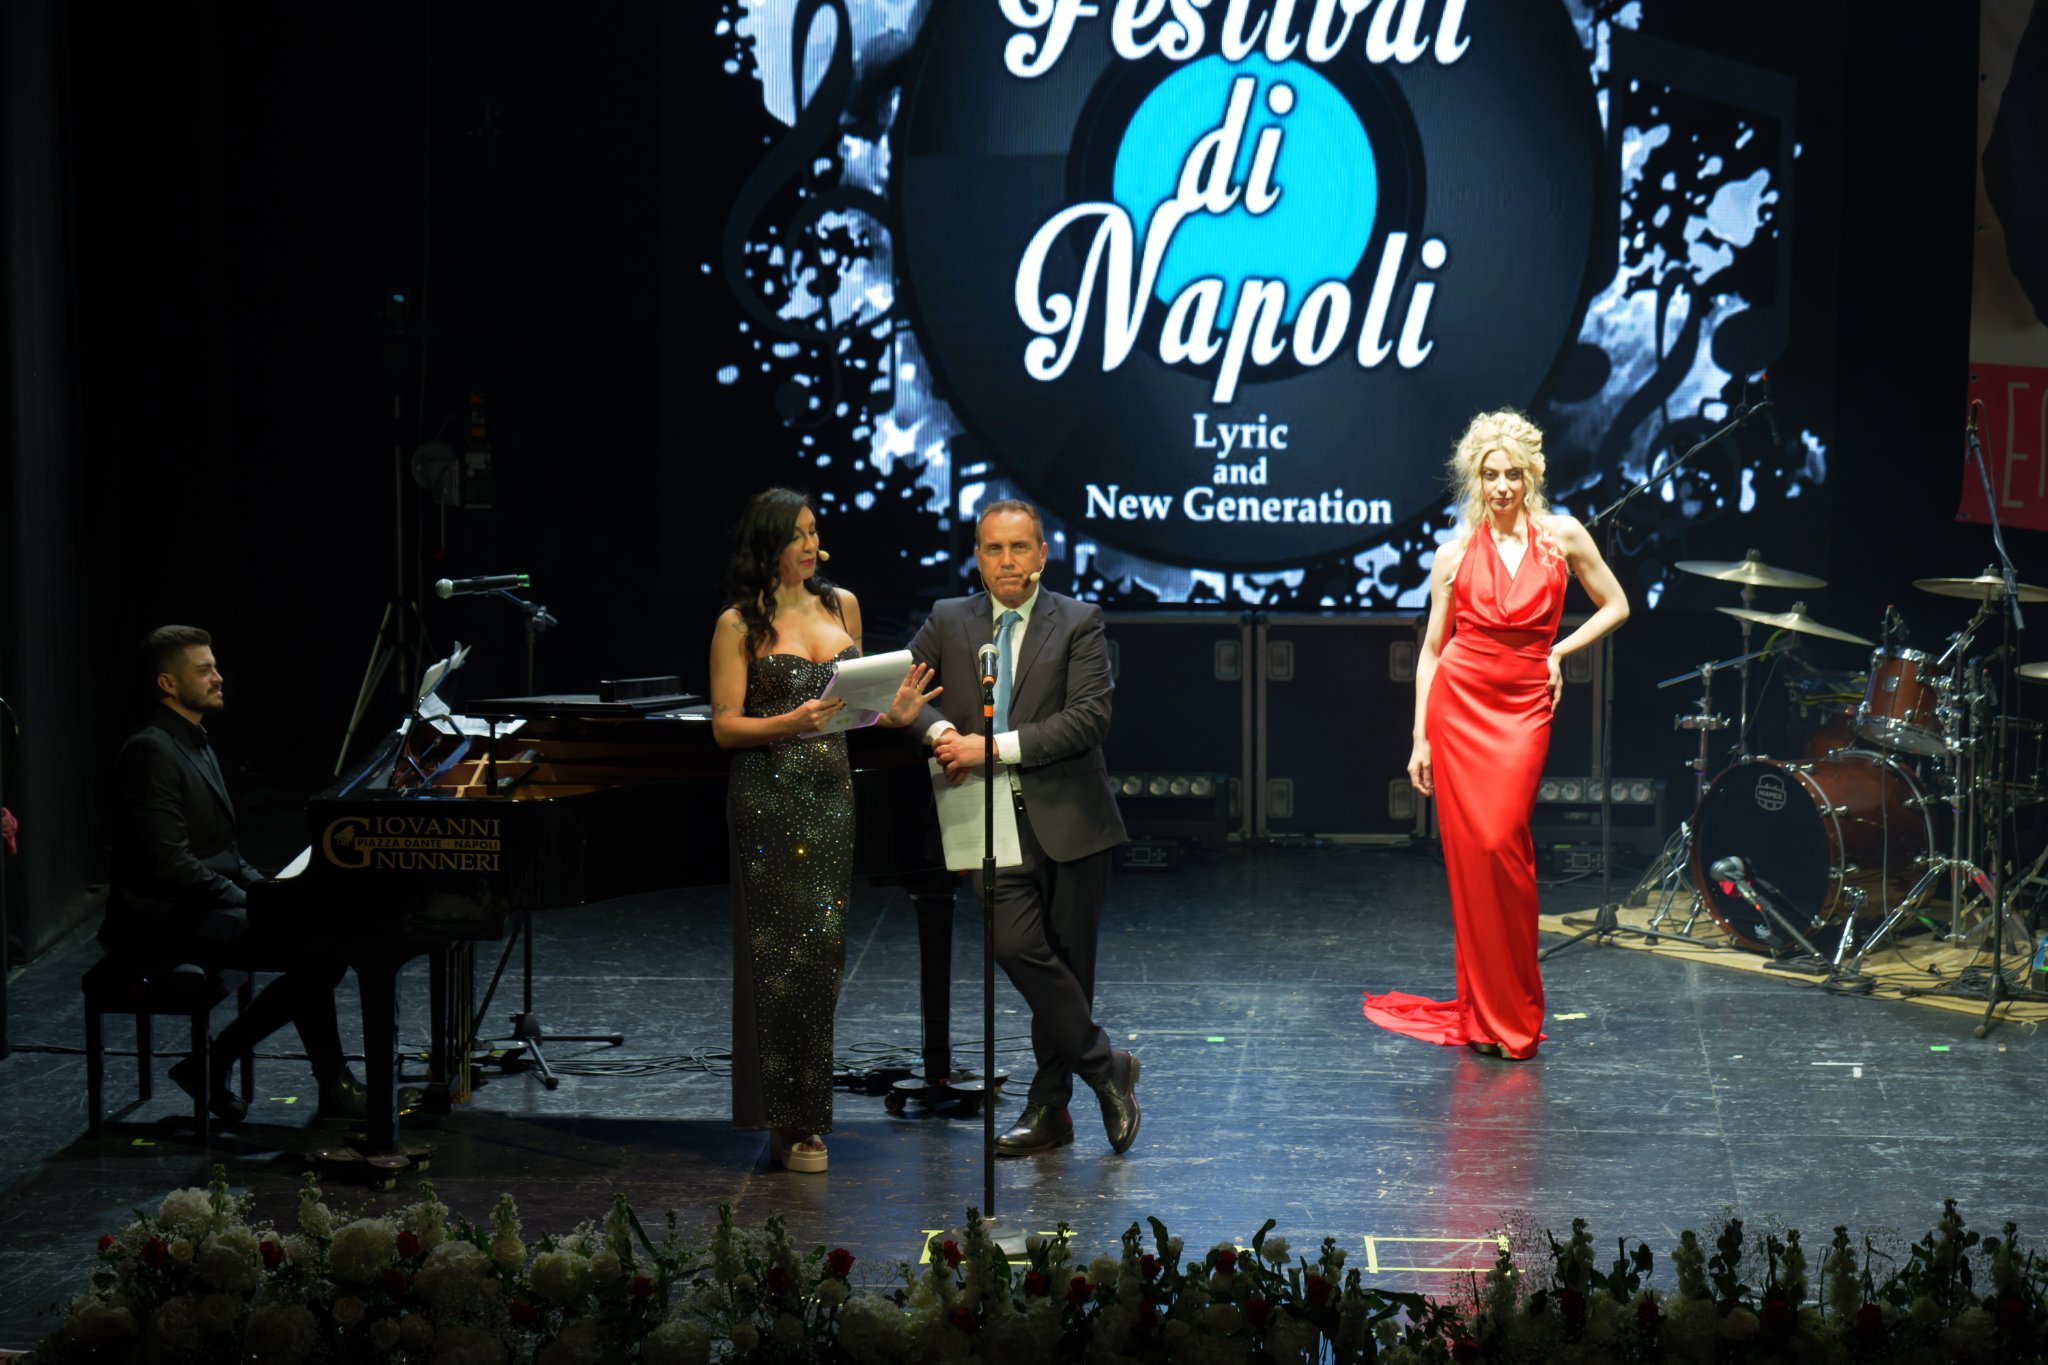 Foto 3 - Festival di Napoli, teatro Sannazzaro in Campania...